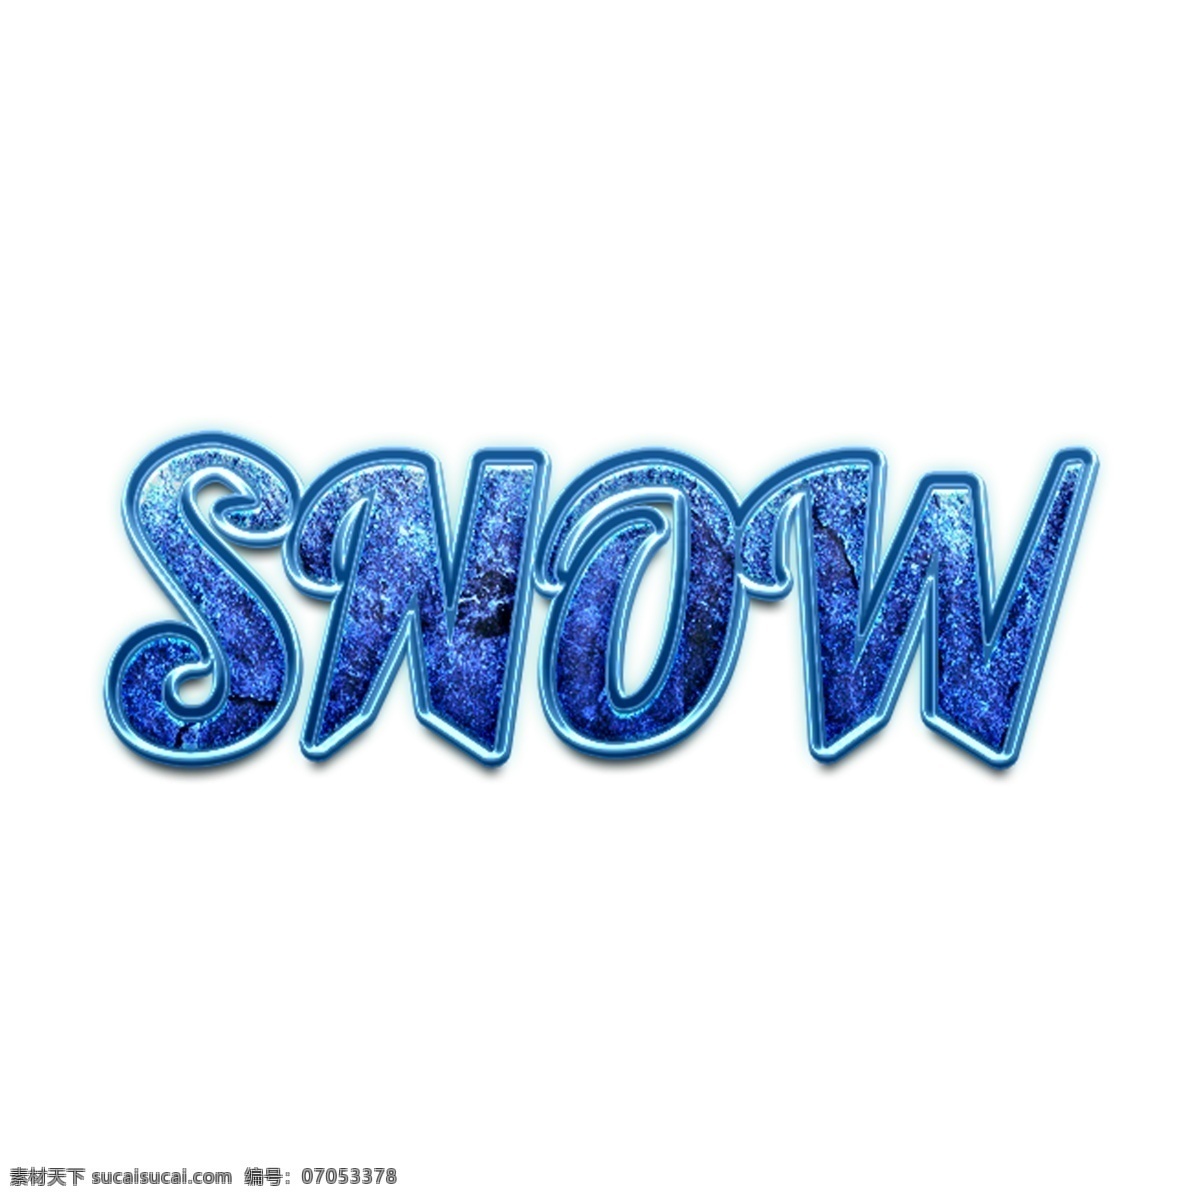 冬天 雪 snow 英文 立体 字 蓝色 凹凸